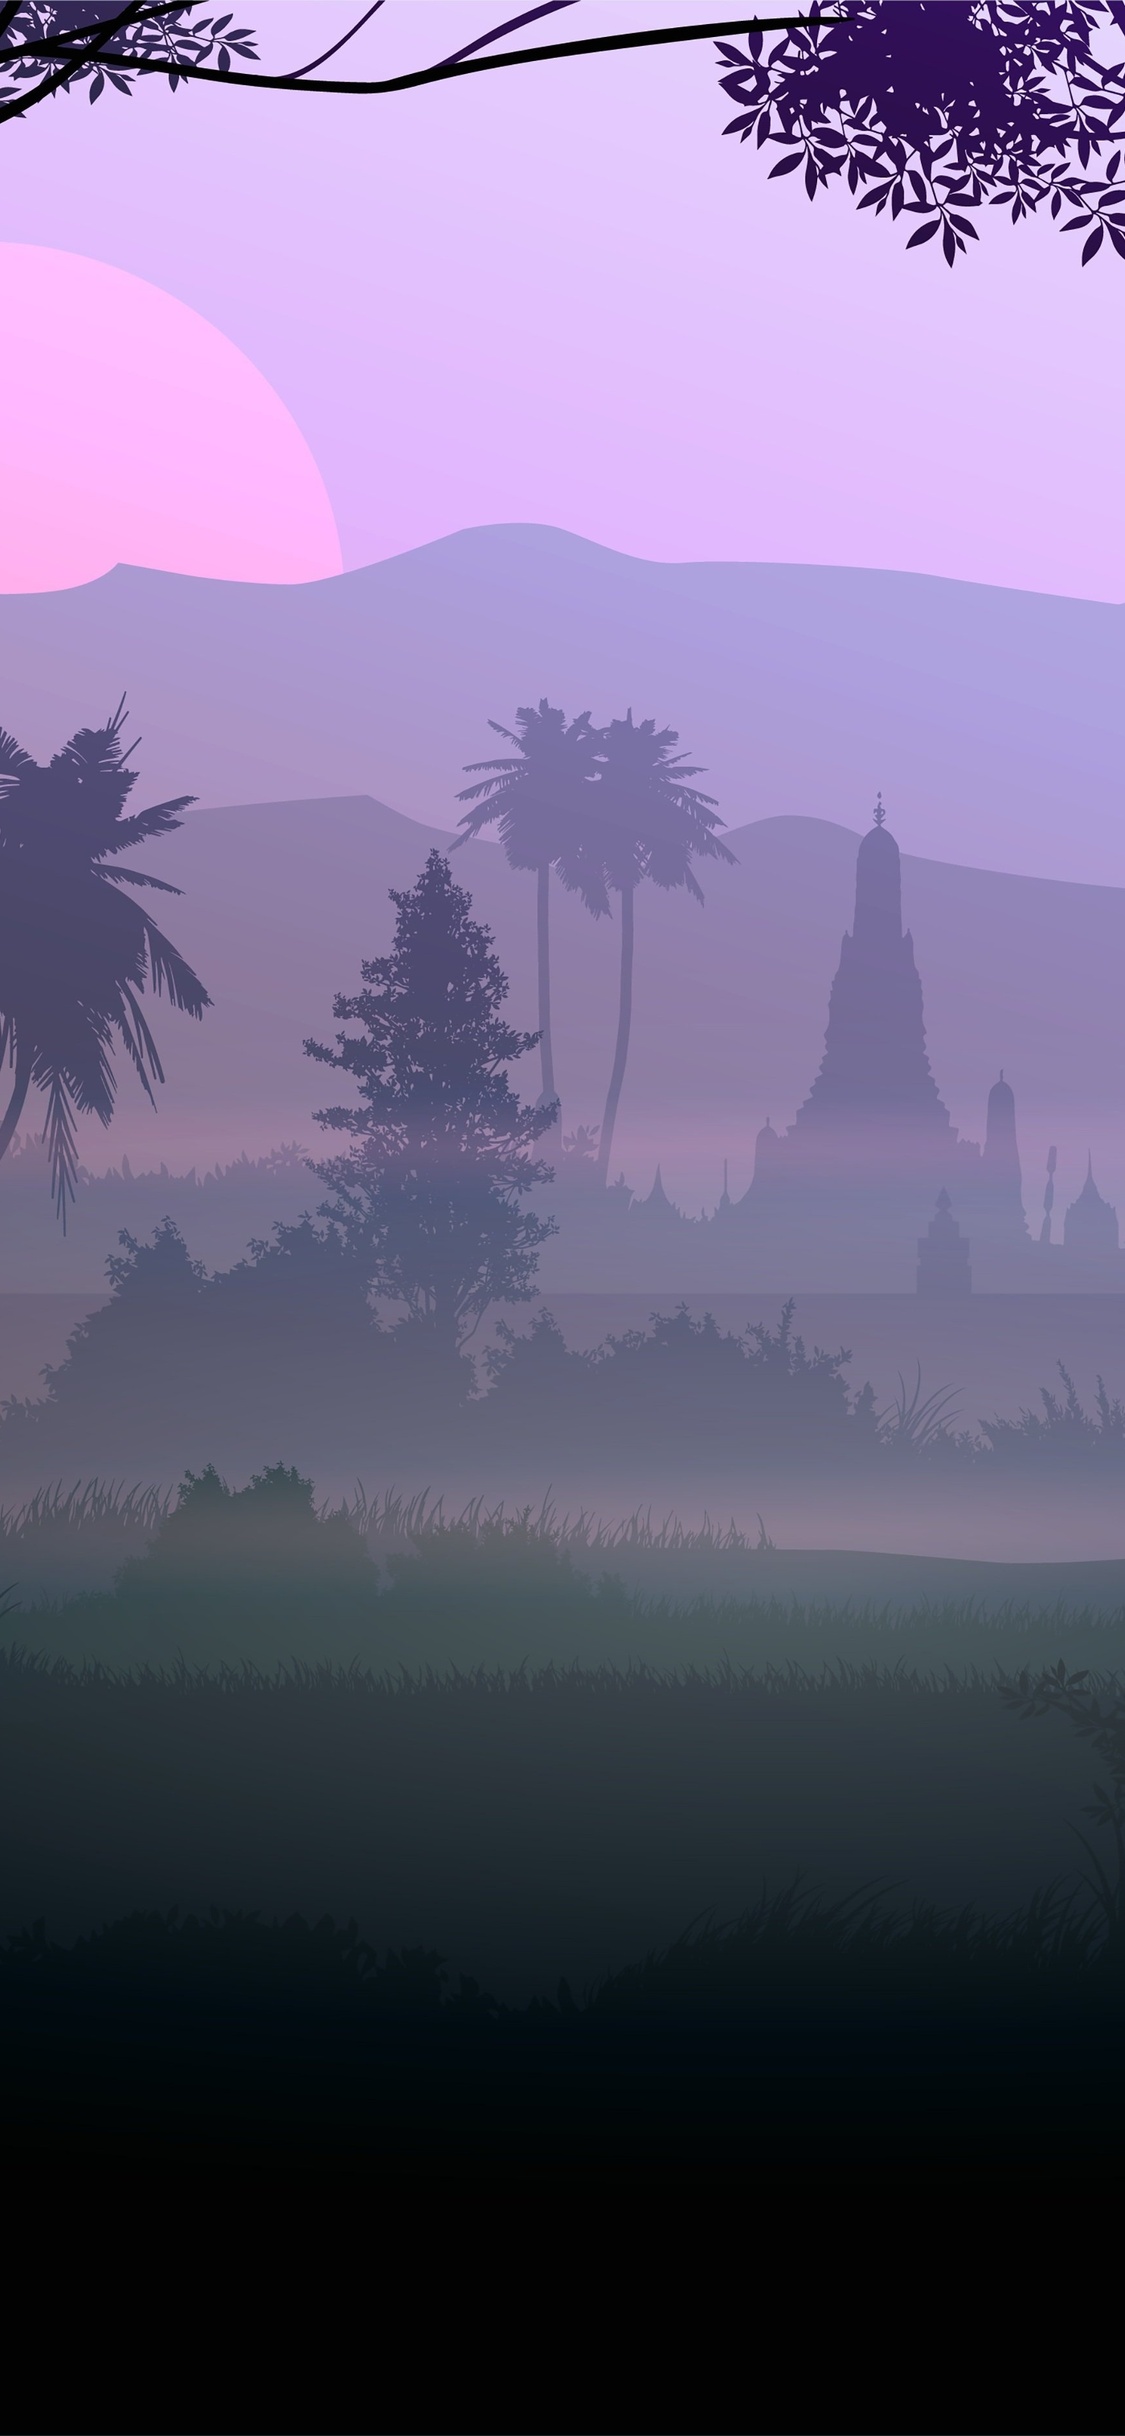 forest-fog-silhouette-5k-ha.jpg